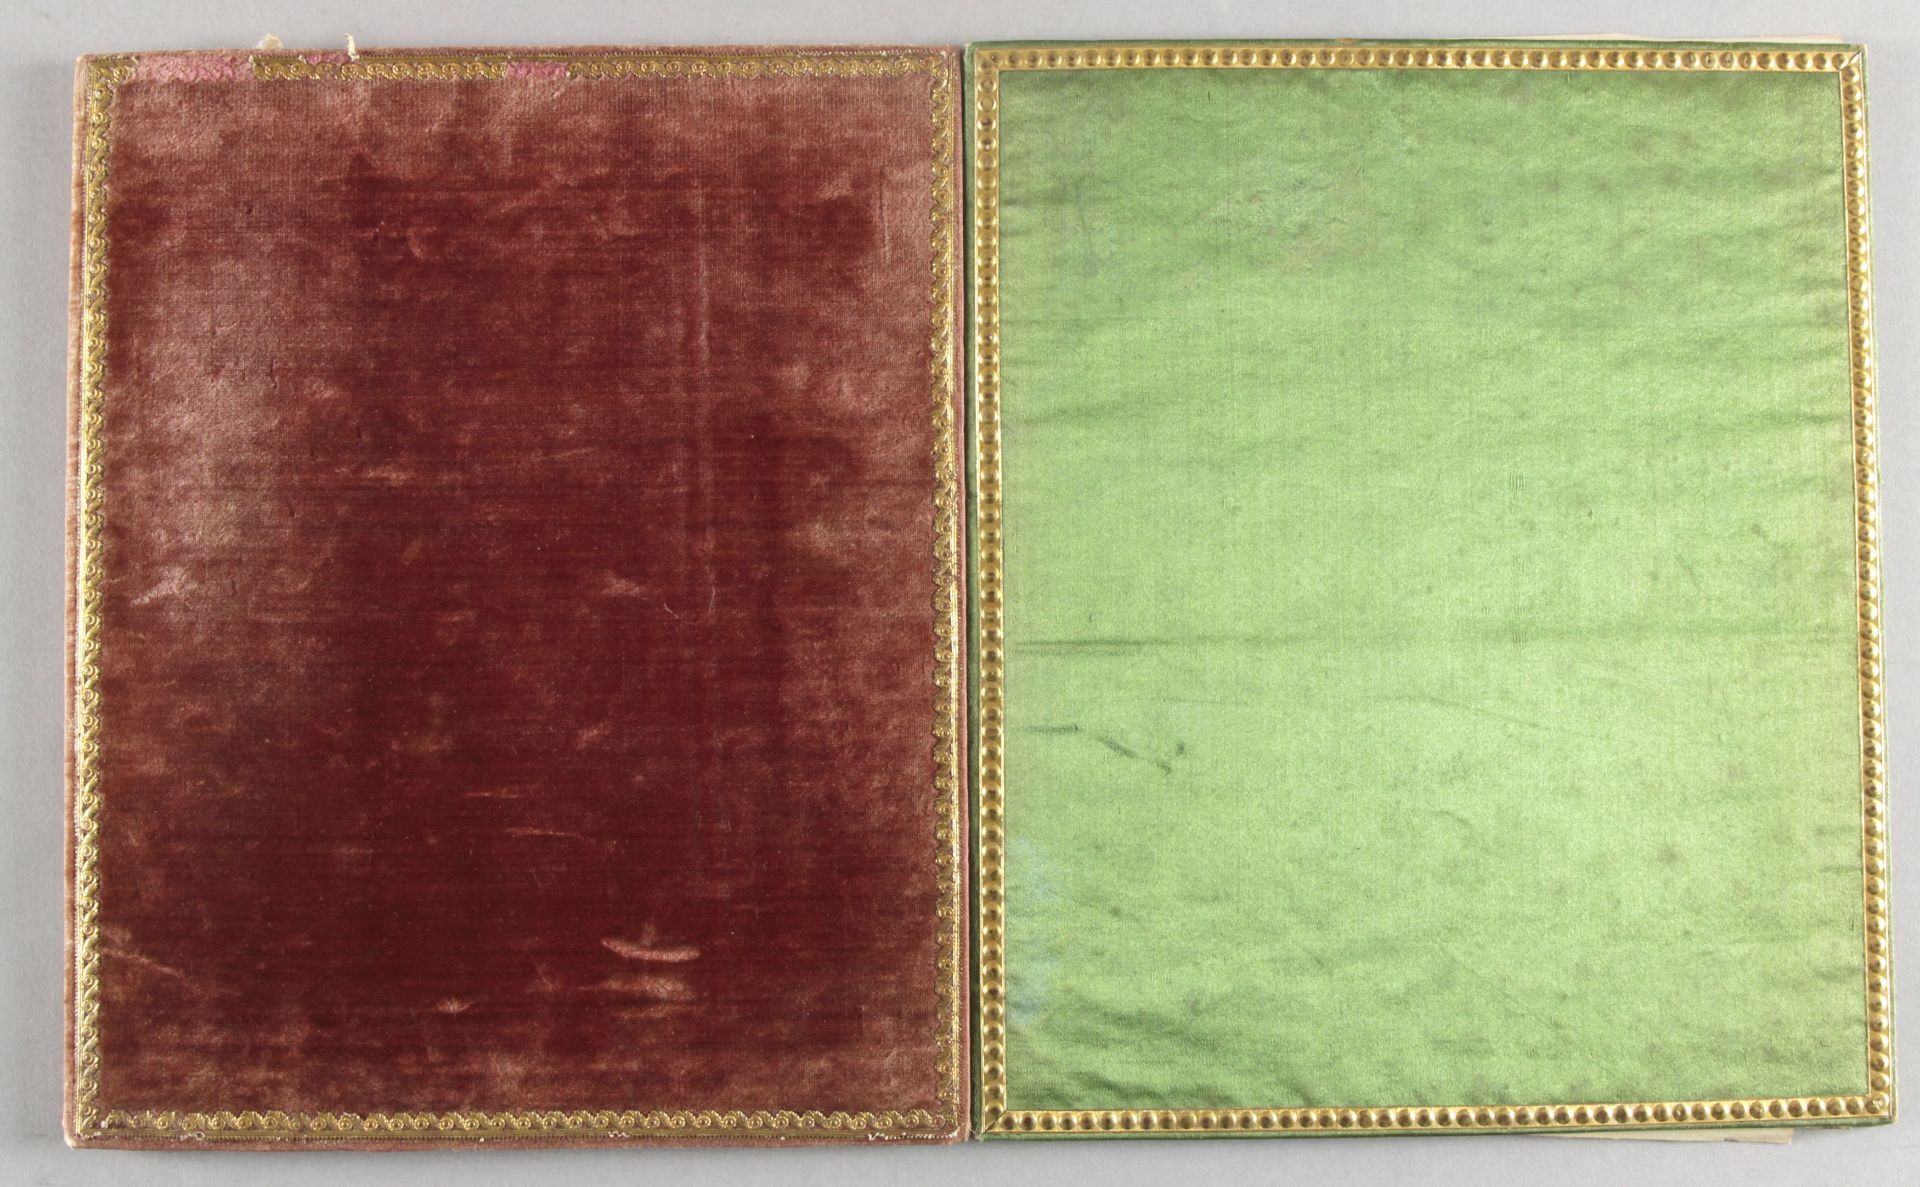 2 Hochzeitsbücher zur Vermählung von Rosalie Schlippe und Karl Reuscher am 21.04.1834 in Altenburg - Image 2 of 2